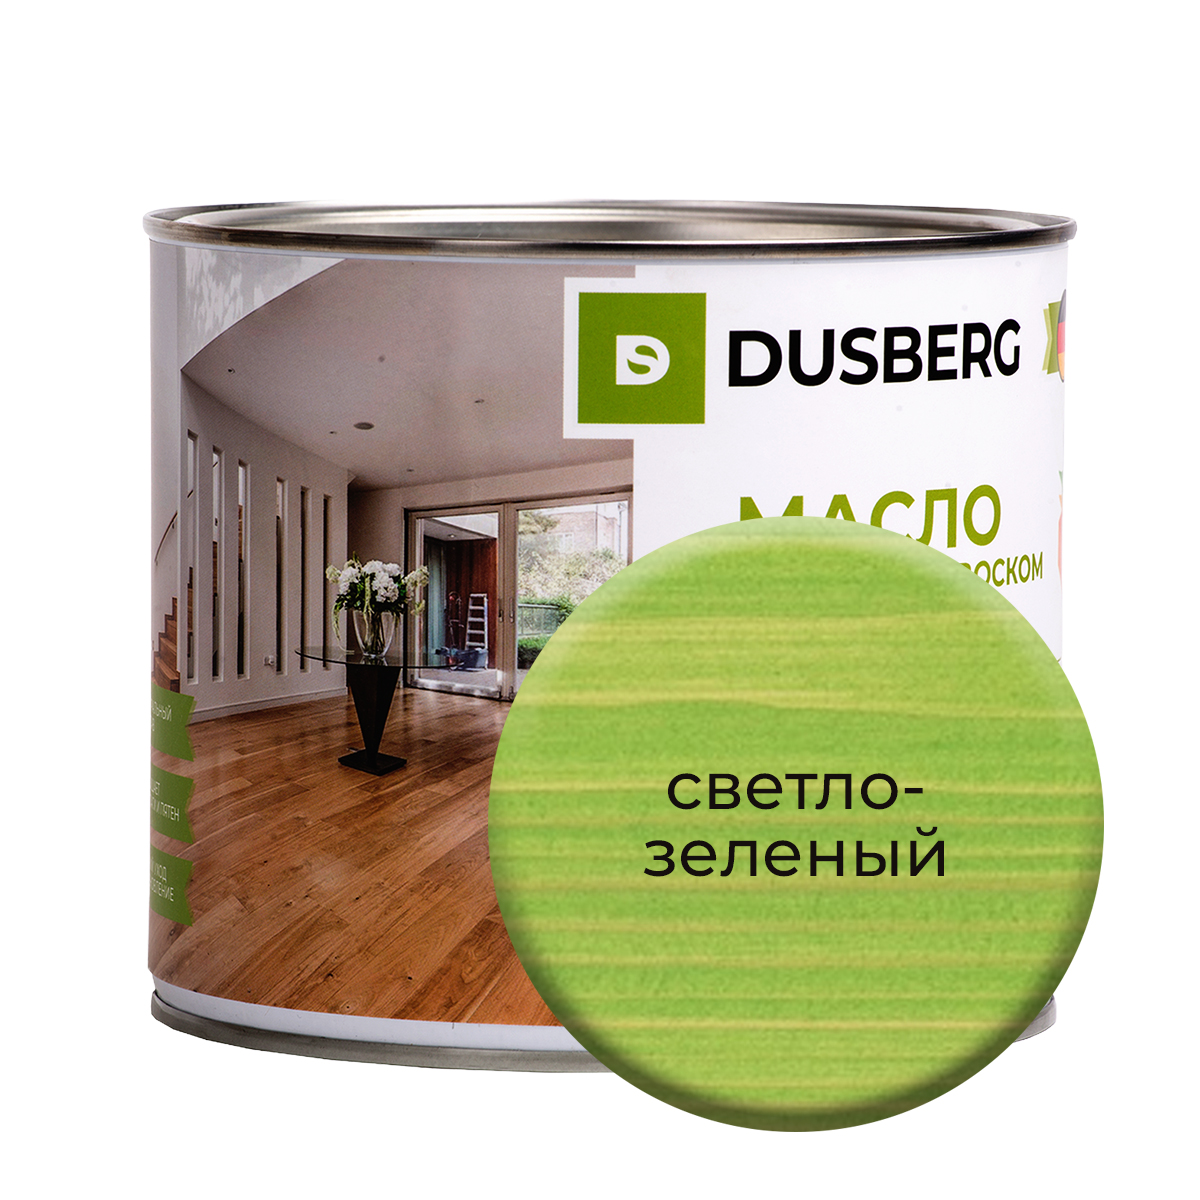 Масло Dusberg с твердым воском на бесцветной основе, 2 л Светло-зеленый масло dusberg с твердым воском на бес ной основе 2 л прозрачный серо зеленый